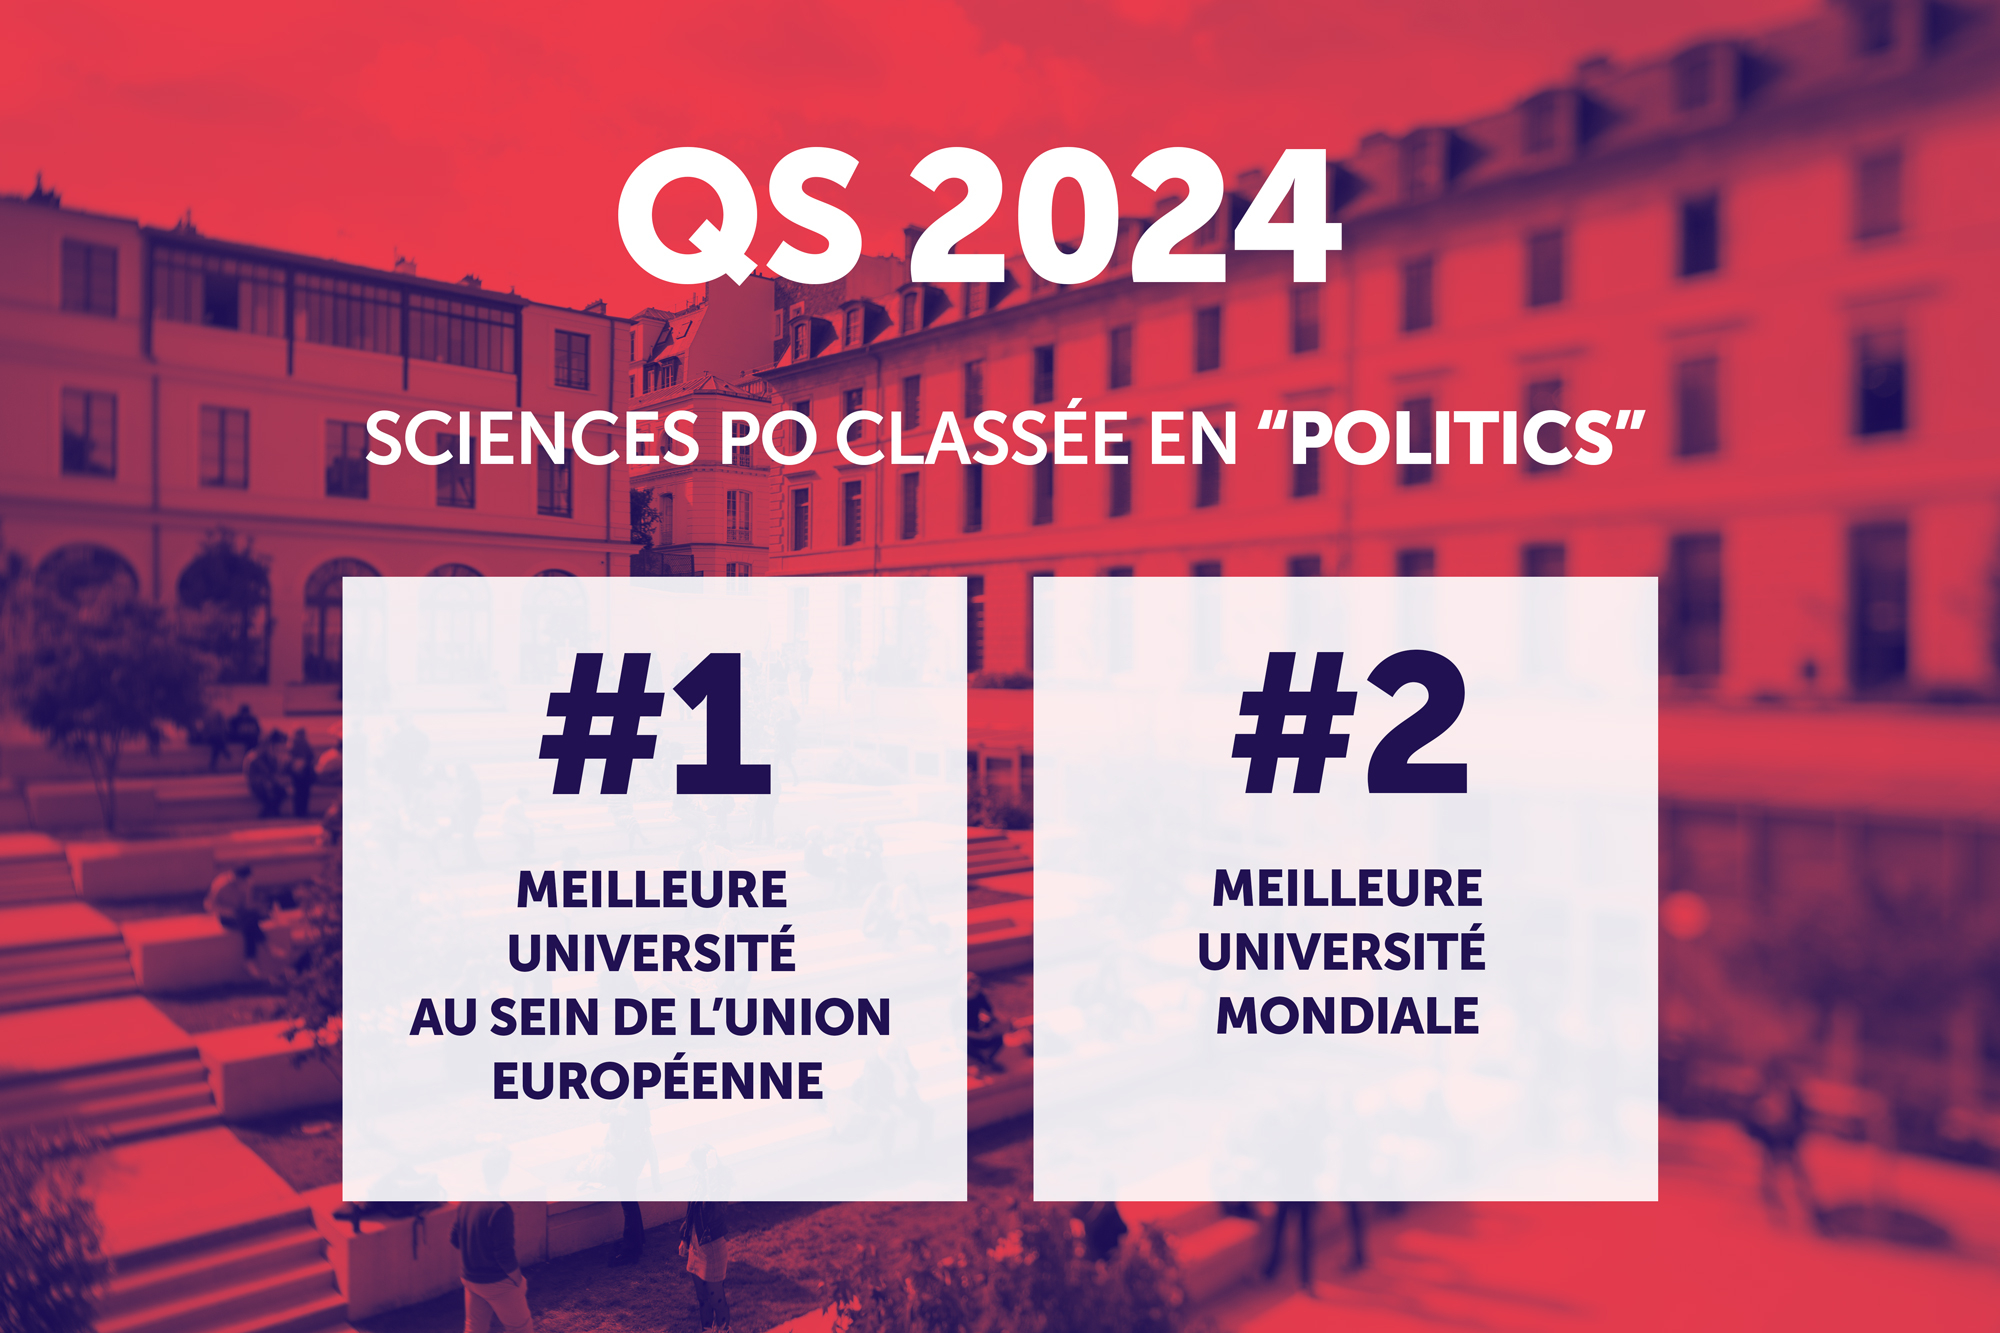 CLASSEMENT QS 2024 : SCIENCES PO DEVIENT LA 2E MEILLEURE UNIVERSITE MONDIALE EN “POLITICS”